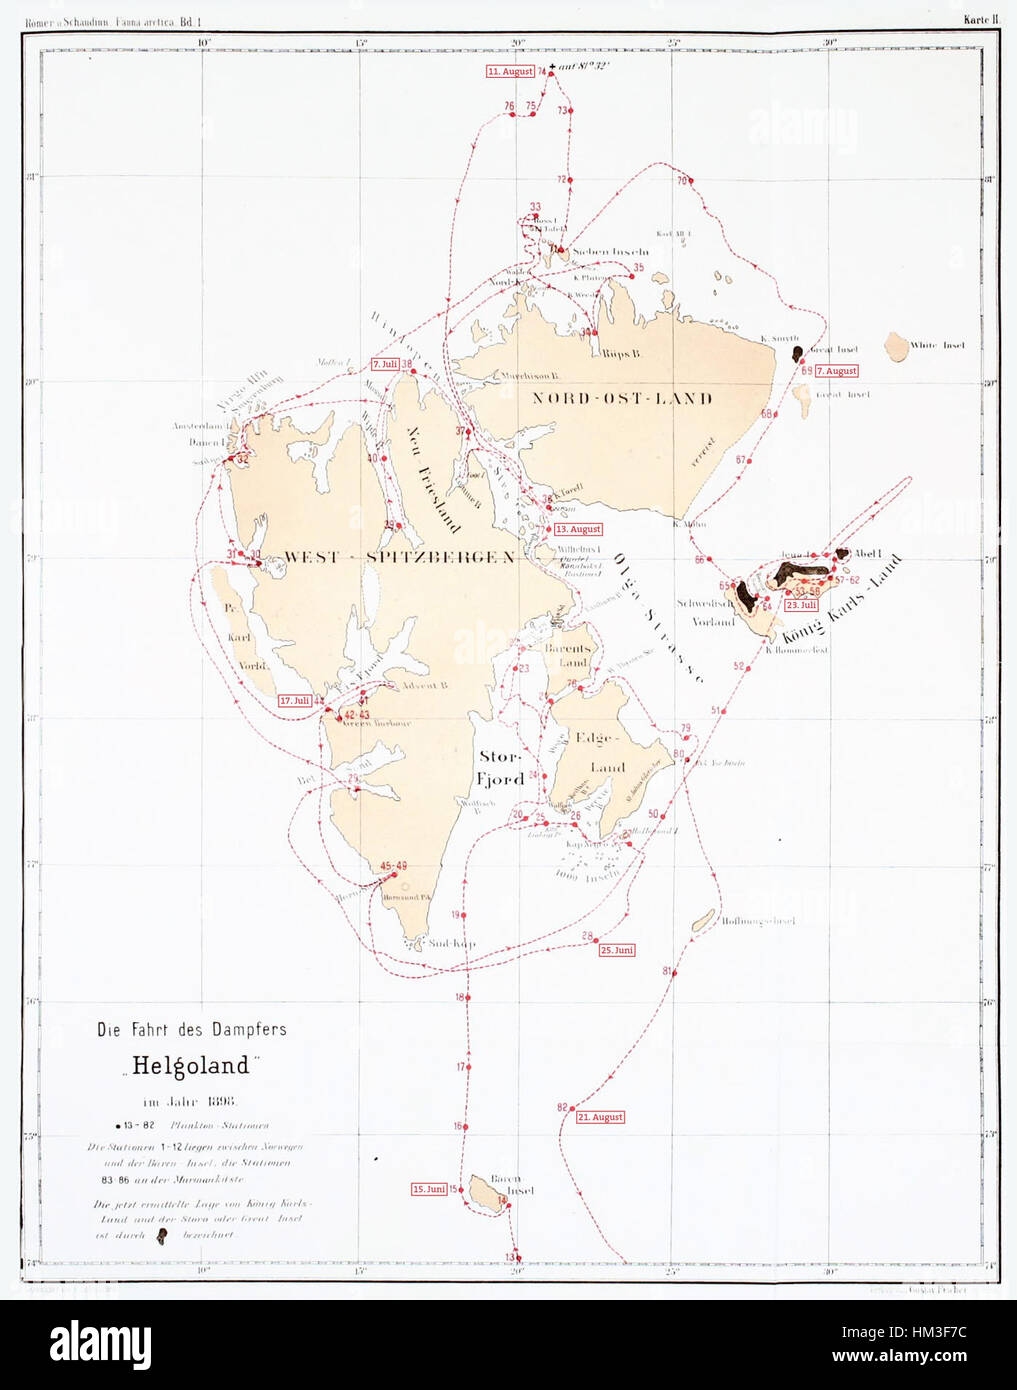 Karte Dampfer Helgoland Spitzbergen 1898 Foto Stock